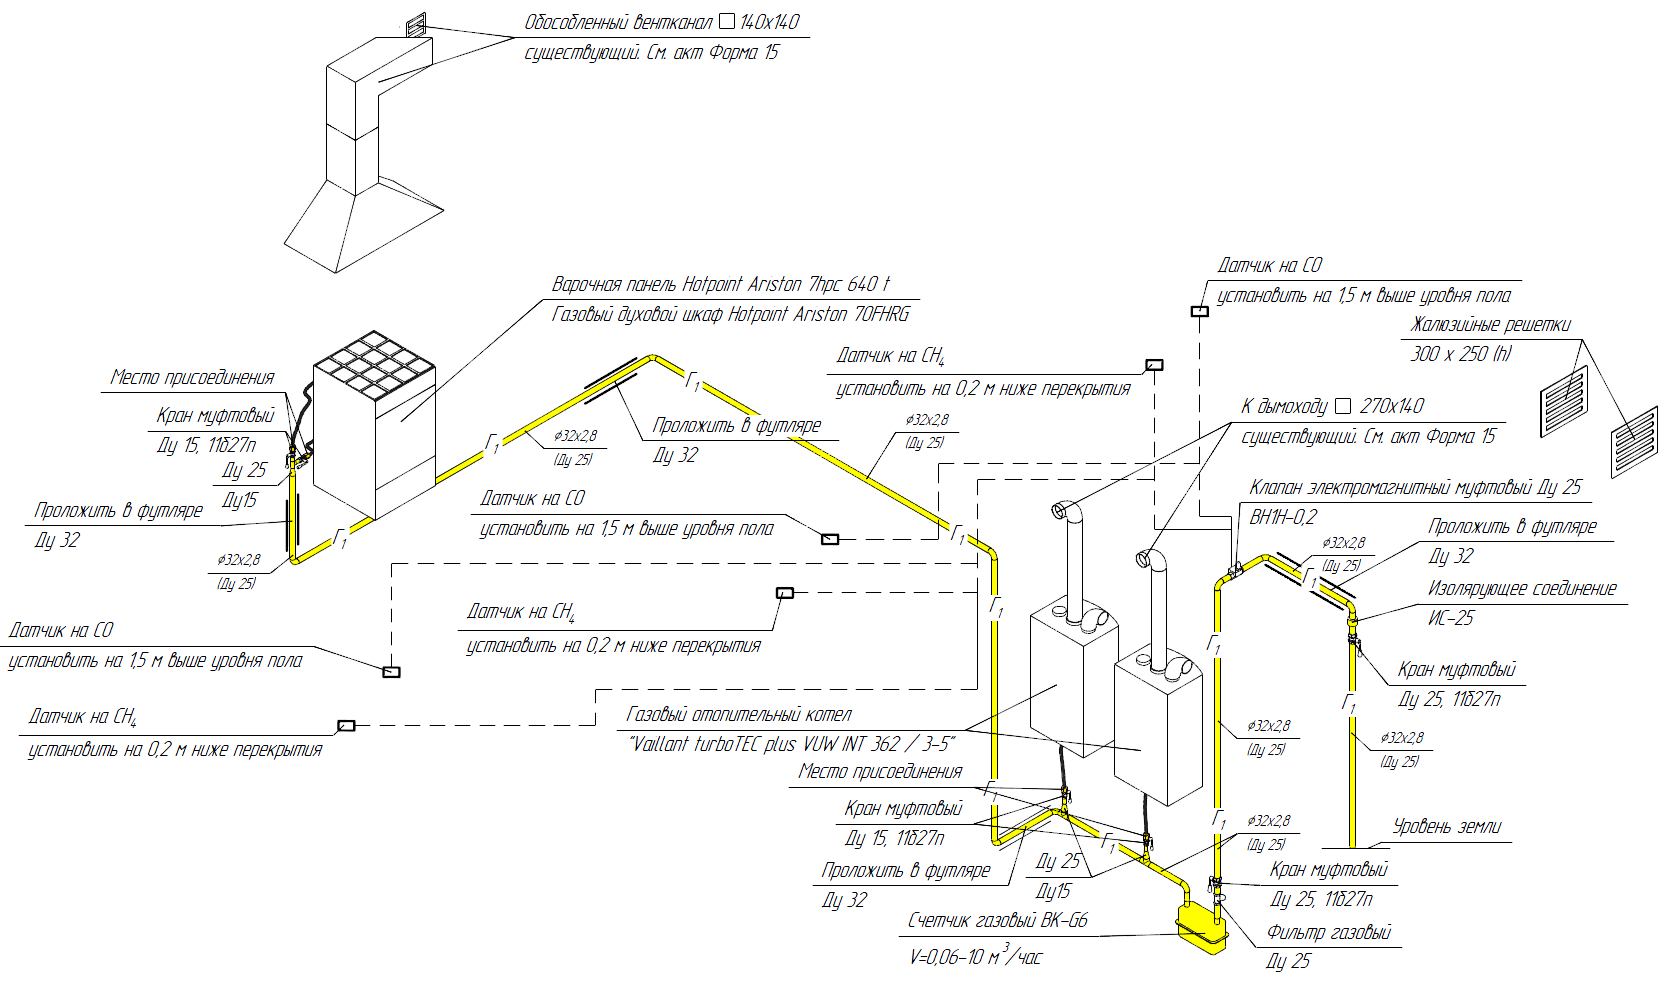 Подключение газа в квартире: порядок и правила подключения газа в многоквартирных домах